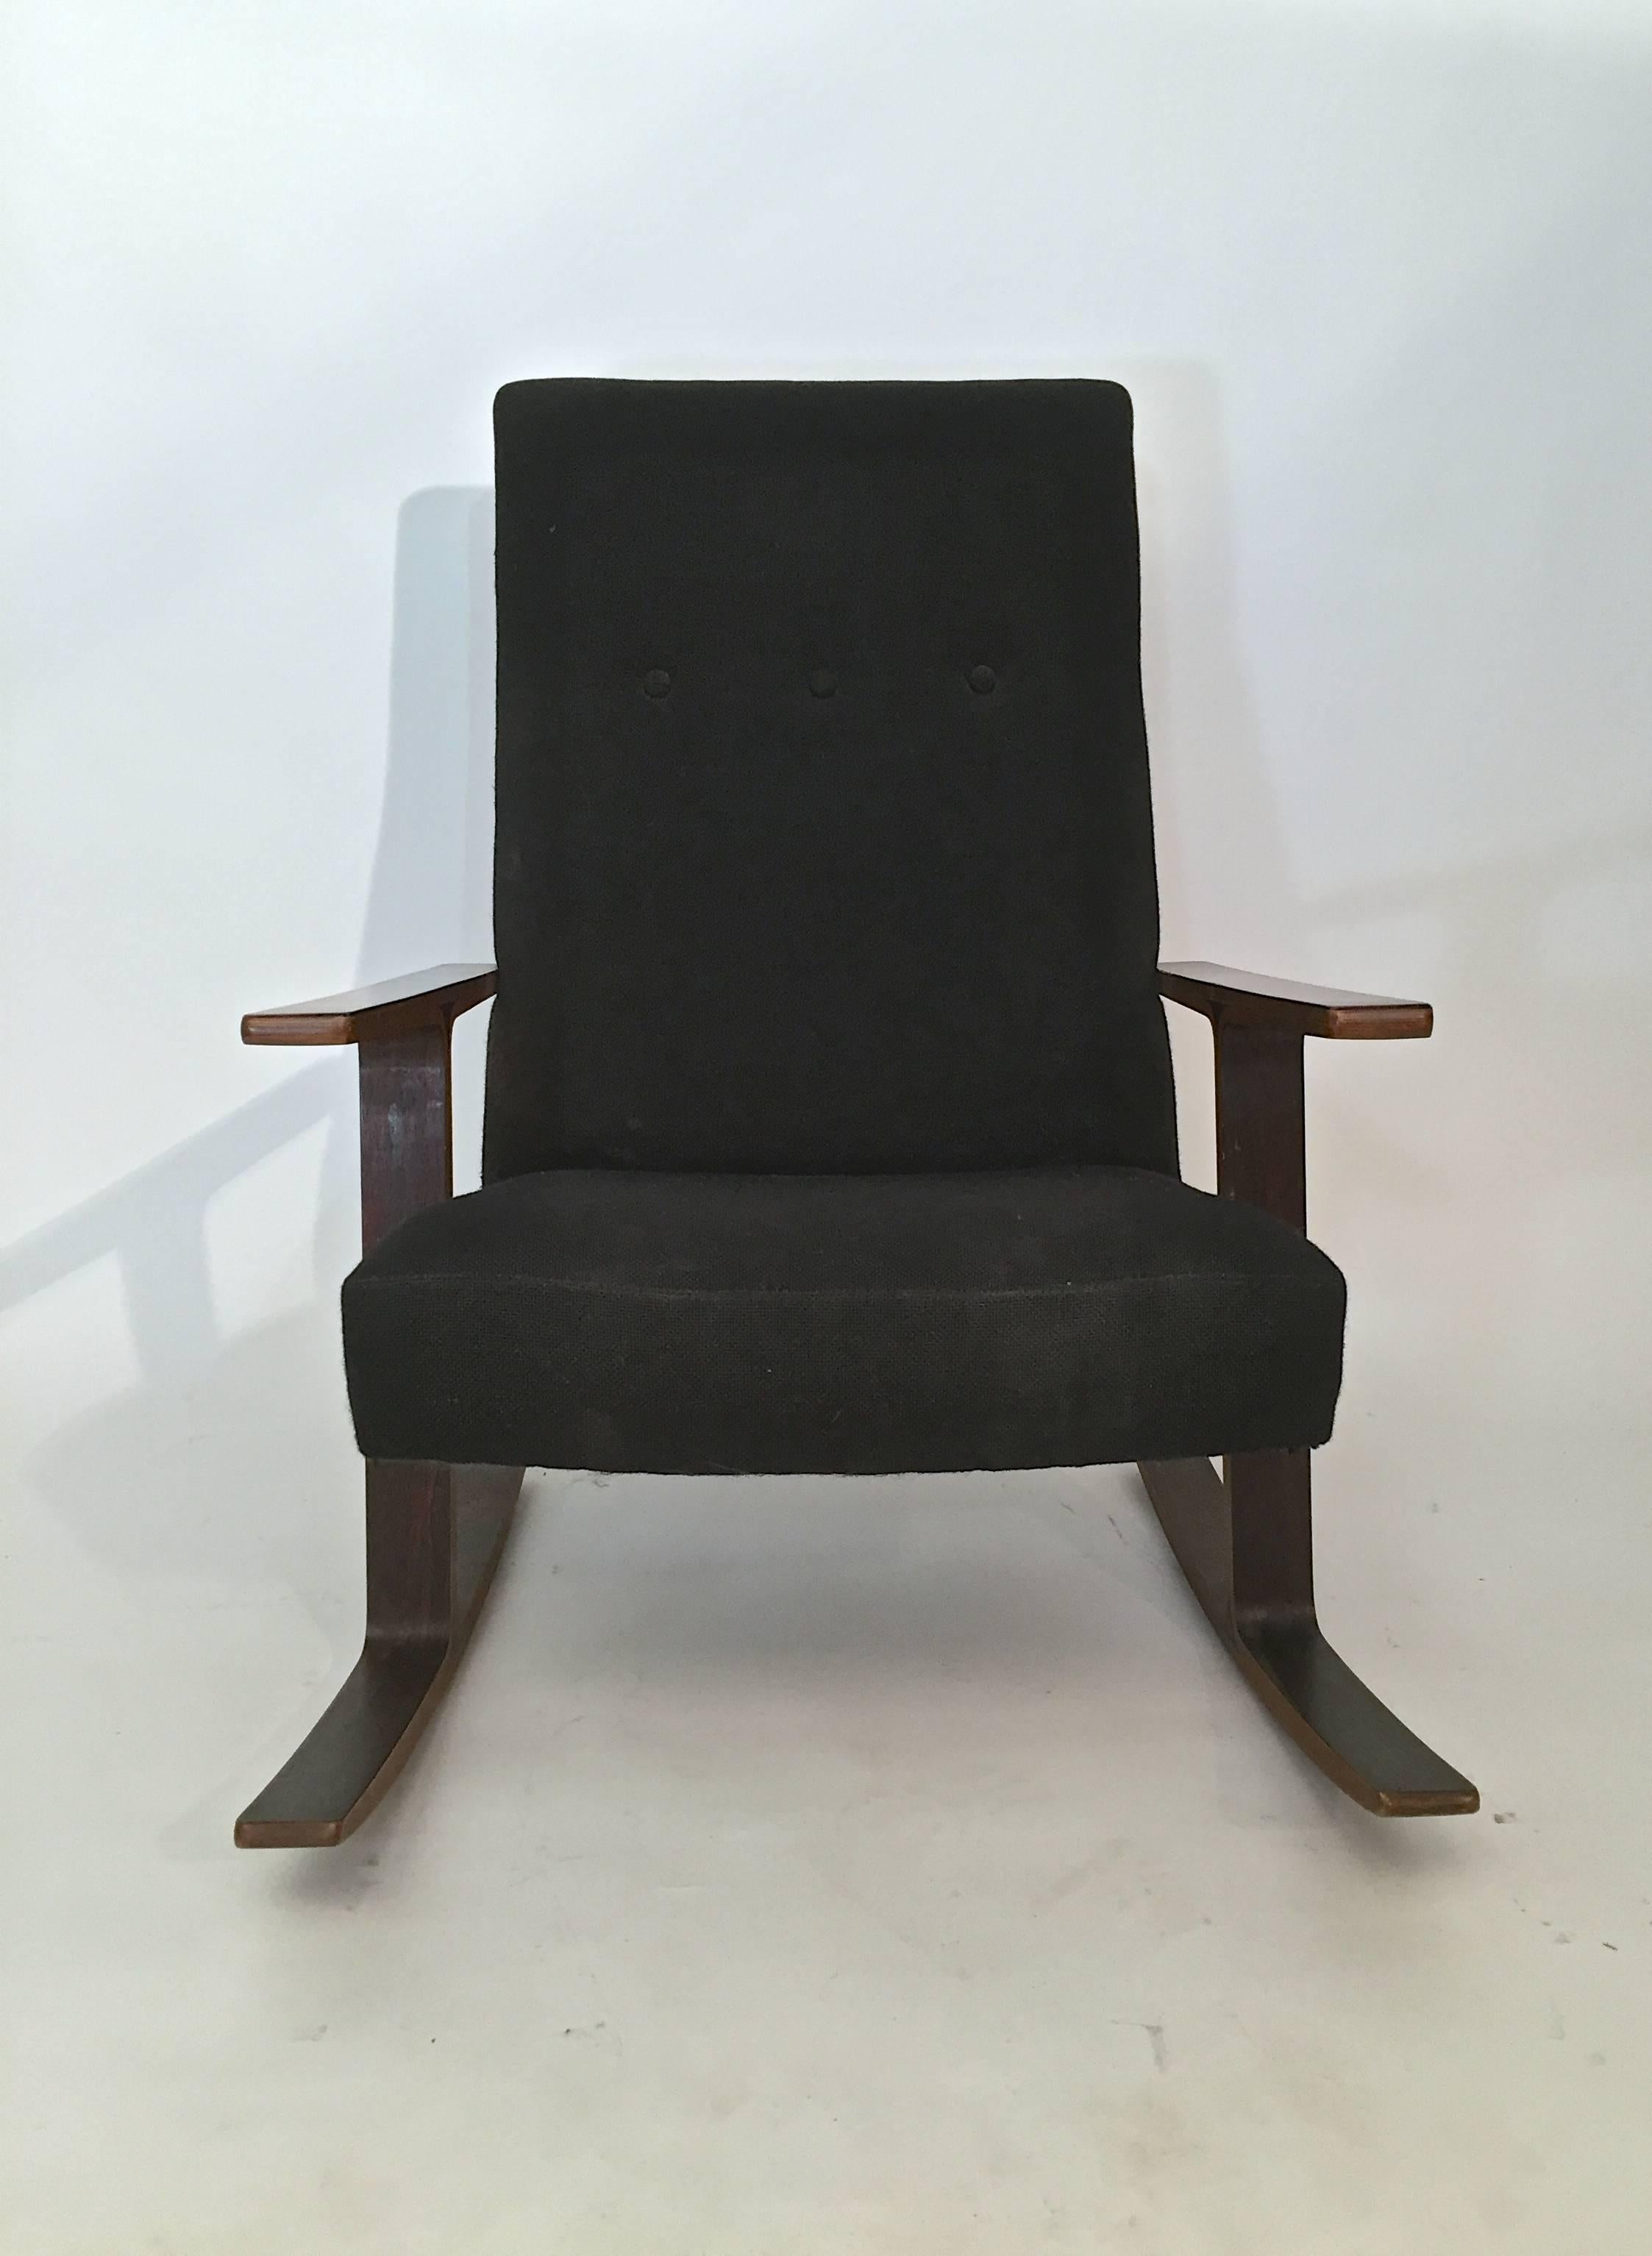 Scandinavian Modern Rosewood Rocking Chair Manner of Mitsumasa Sugasawa for Tendo Mokko